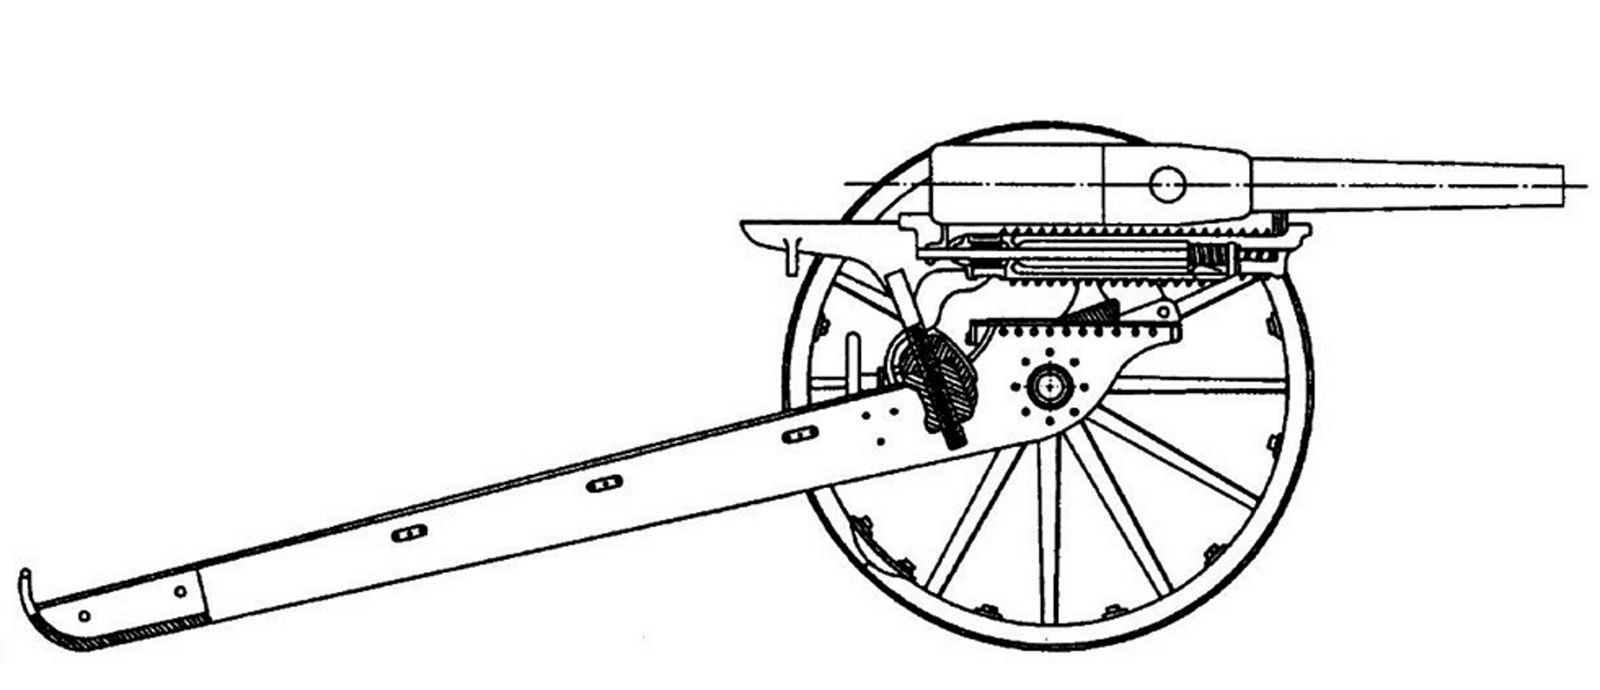 Скорострельная пушка Барановского 1877 чертежи